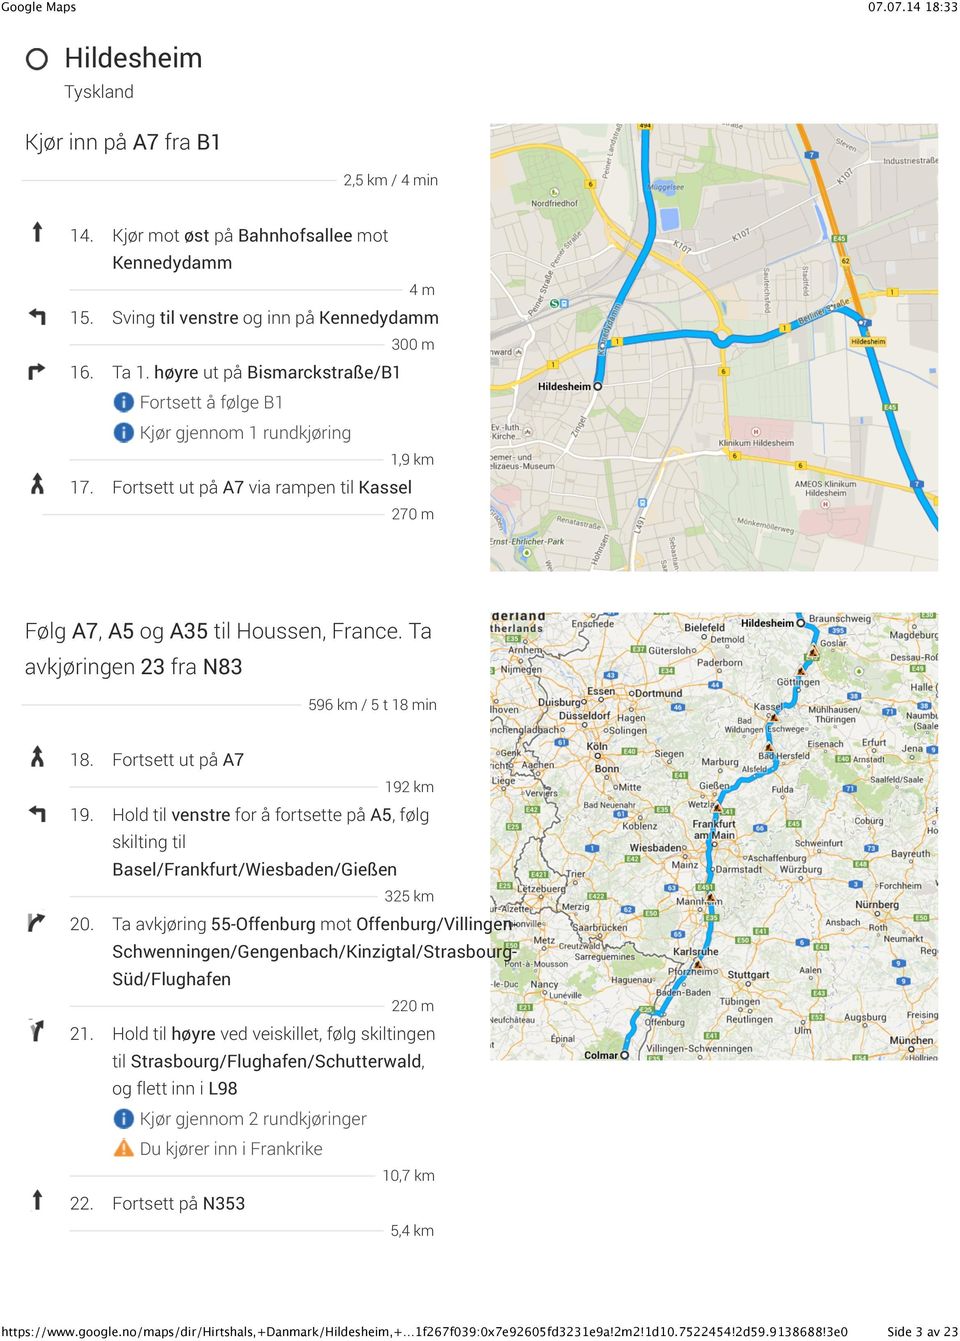 Fortsett ut på A7 192 km 19. Hold til venstre for å fortsette på A5, følg skilting til Basel/Frankfurt/Wiesbaden/Gießen 325 km 20.